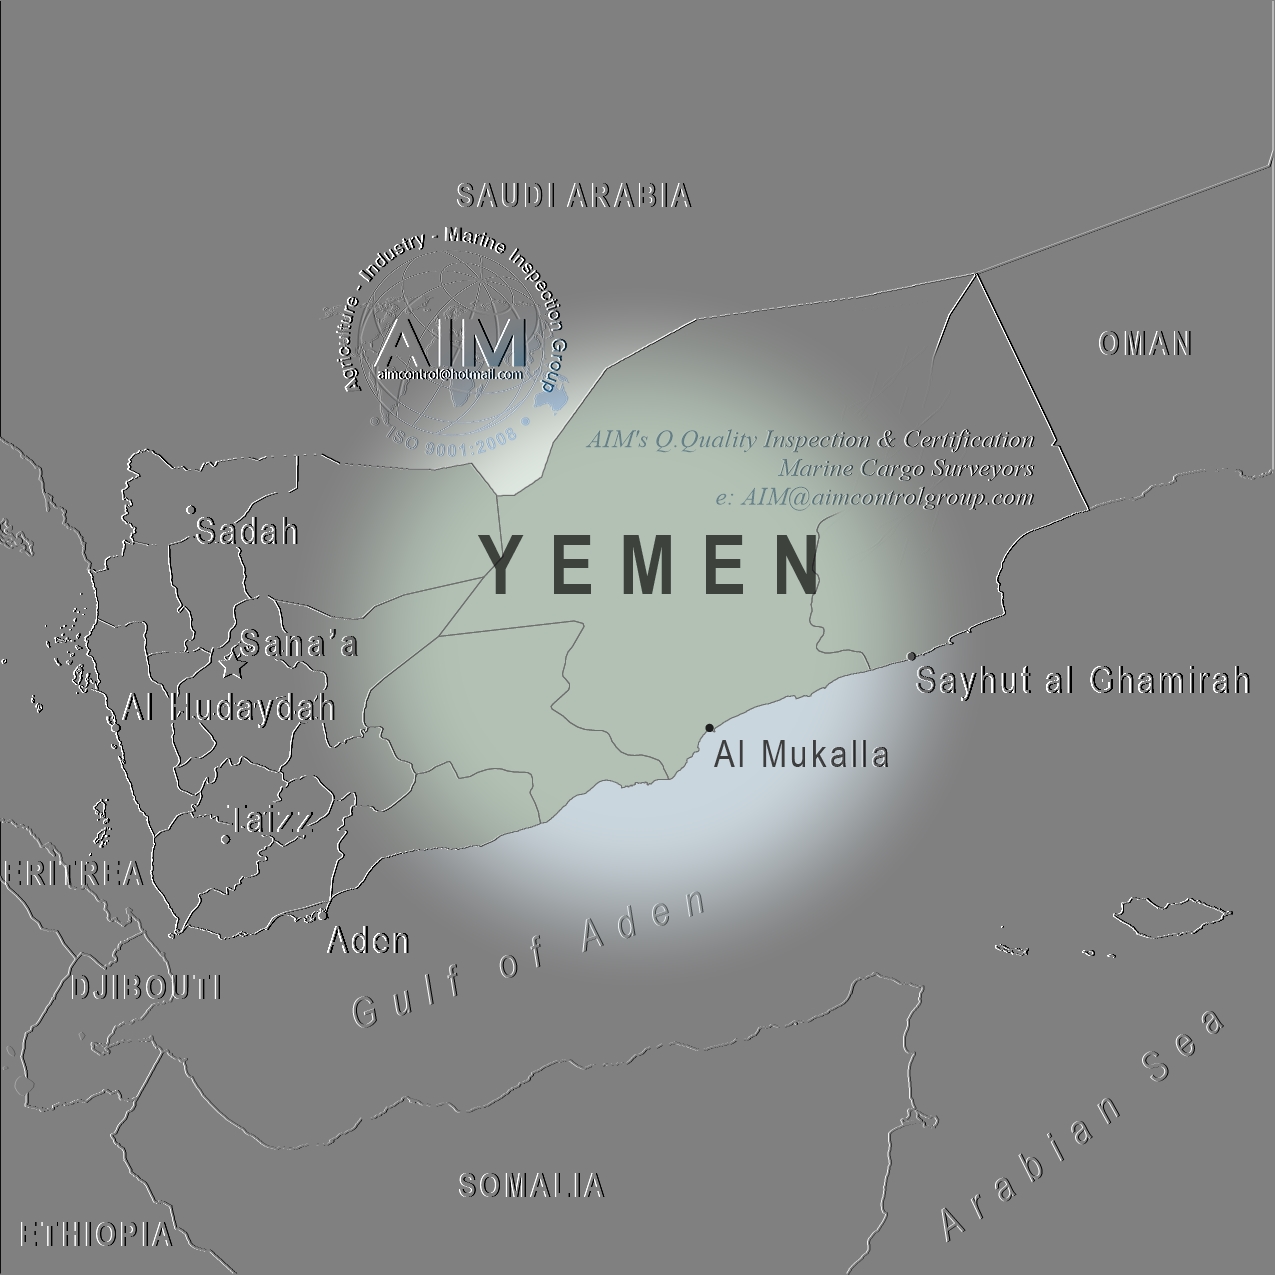 Yemen_quality_inspection_and_marine_cargo_surveyors